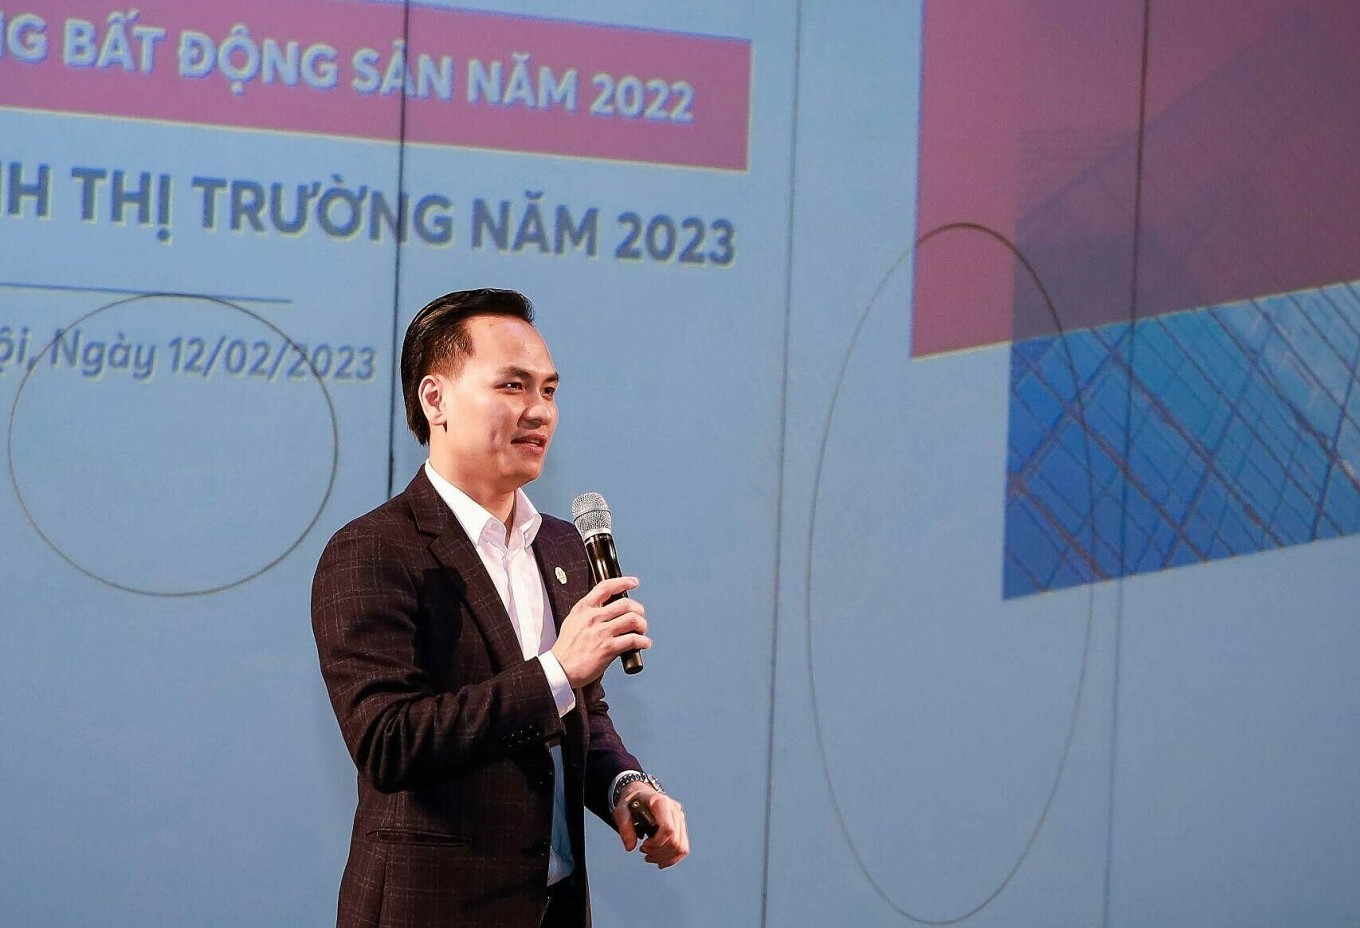 
Ông Rich Nguyễn, chuyên gia đầu tư bất động sản cá nhân
